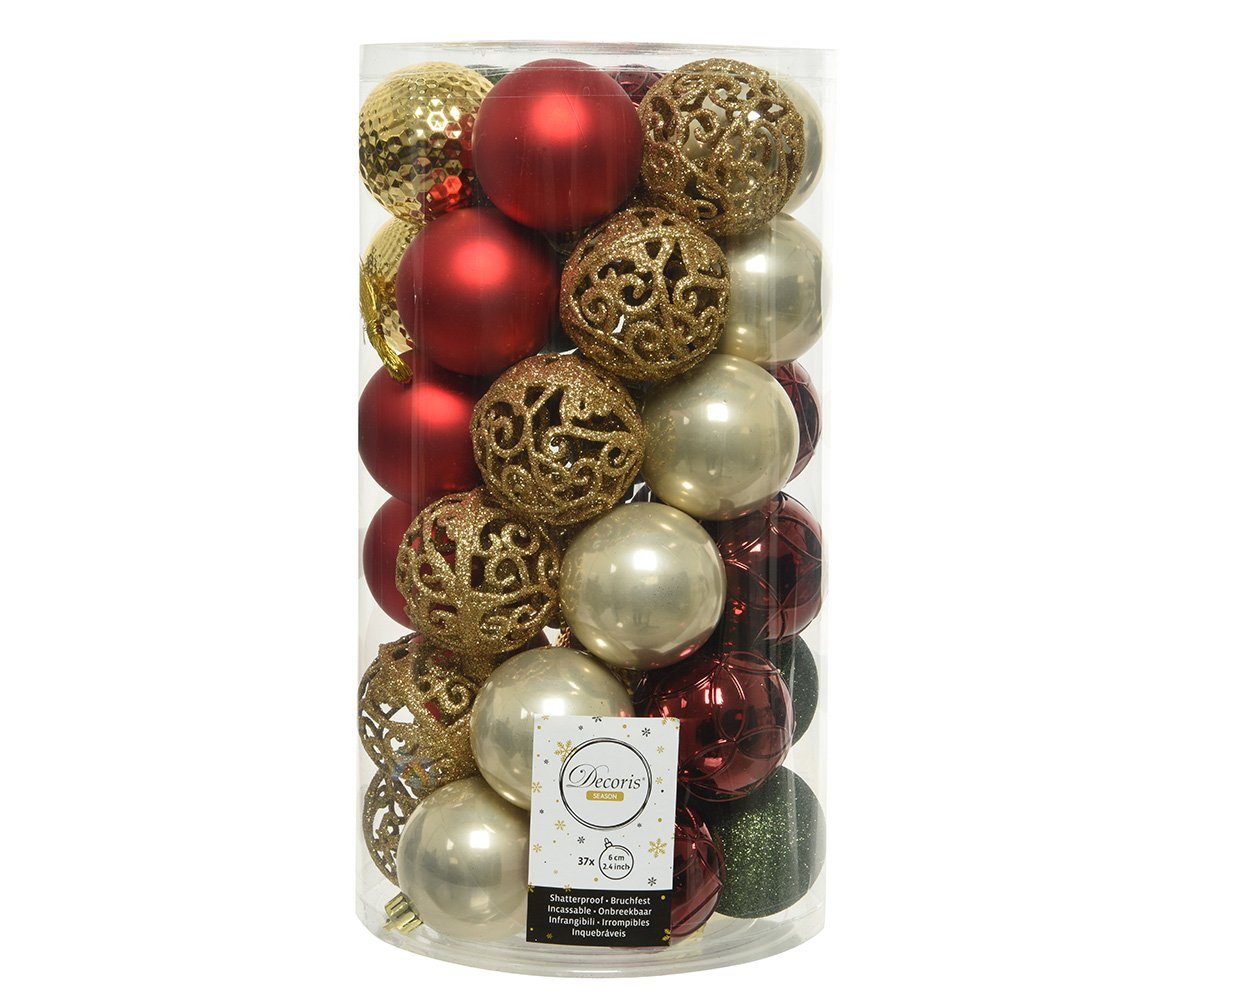 Kunststoff Weihnachtskugeln Ornamente 37er bunt, Weihnachtsbaumkugel, Set 6cm Mix decorations Decoris season